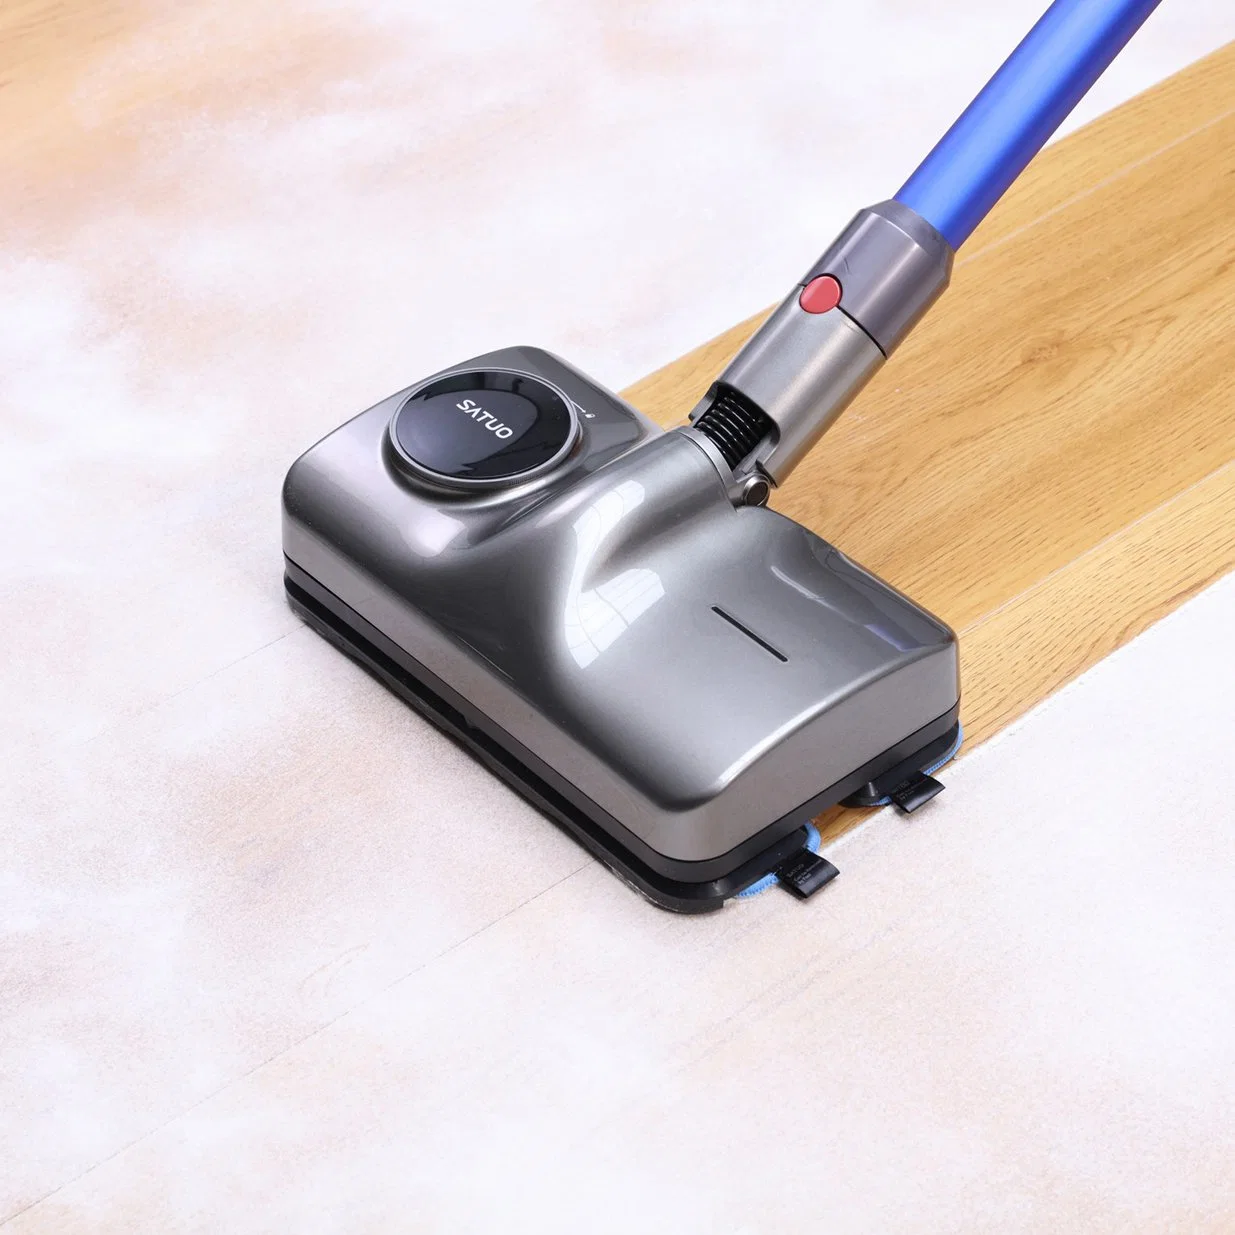 Компоненты пылесоса Smart Mop для Dyson Wet and Dry Головка для бытовой очистки с водяным баком